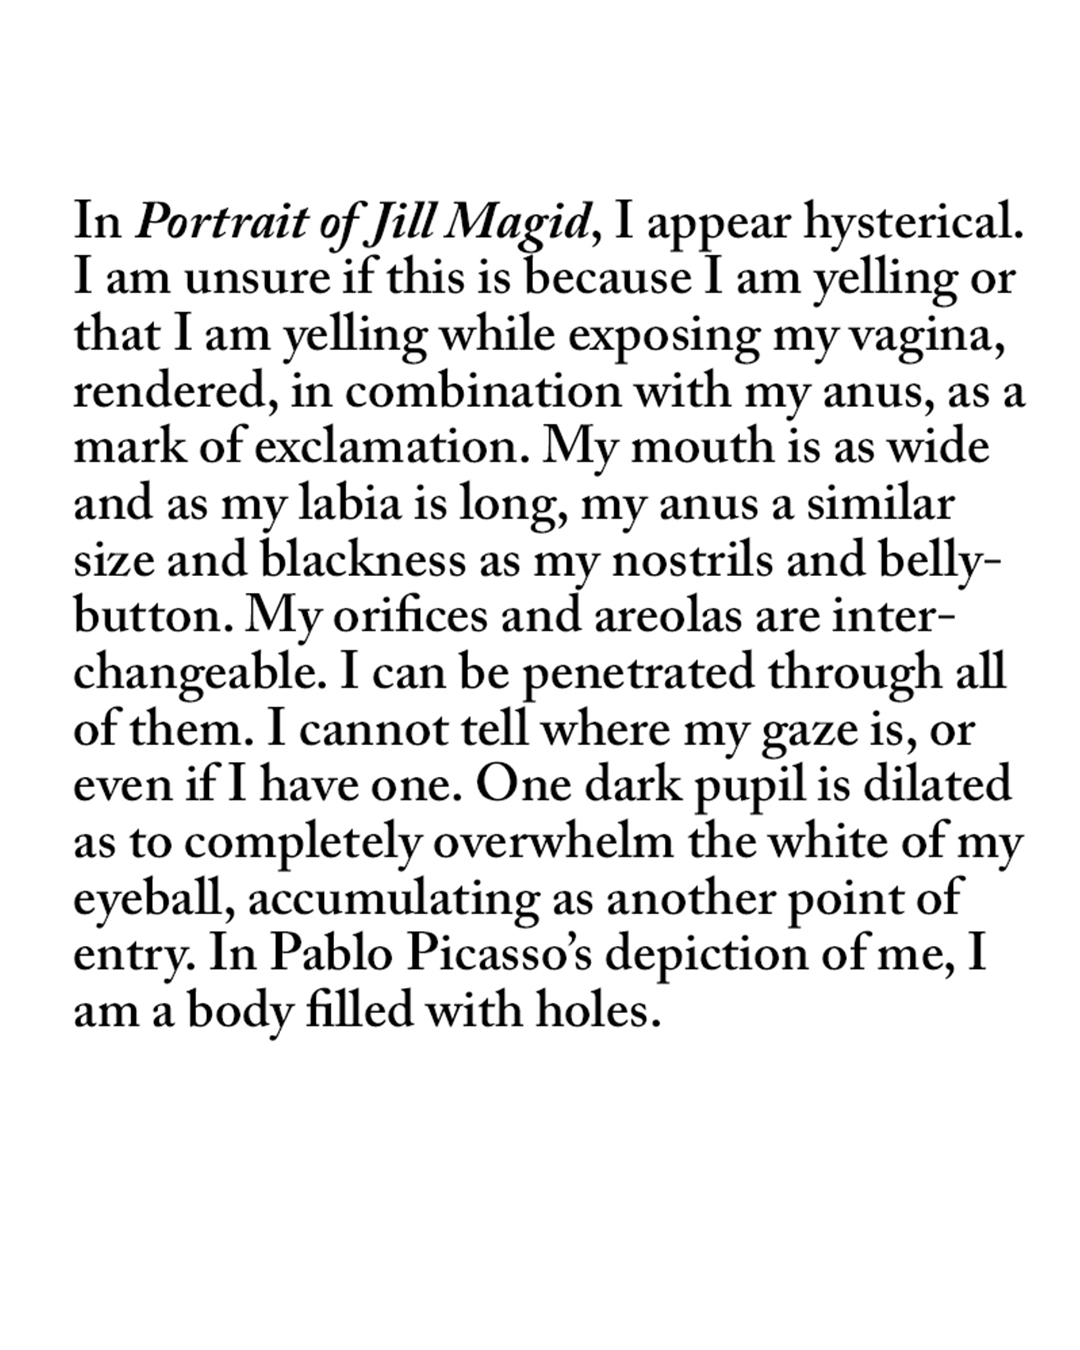 PORTRAIT OF JILL MAGID, PABLO PICASSO, 1967.